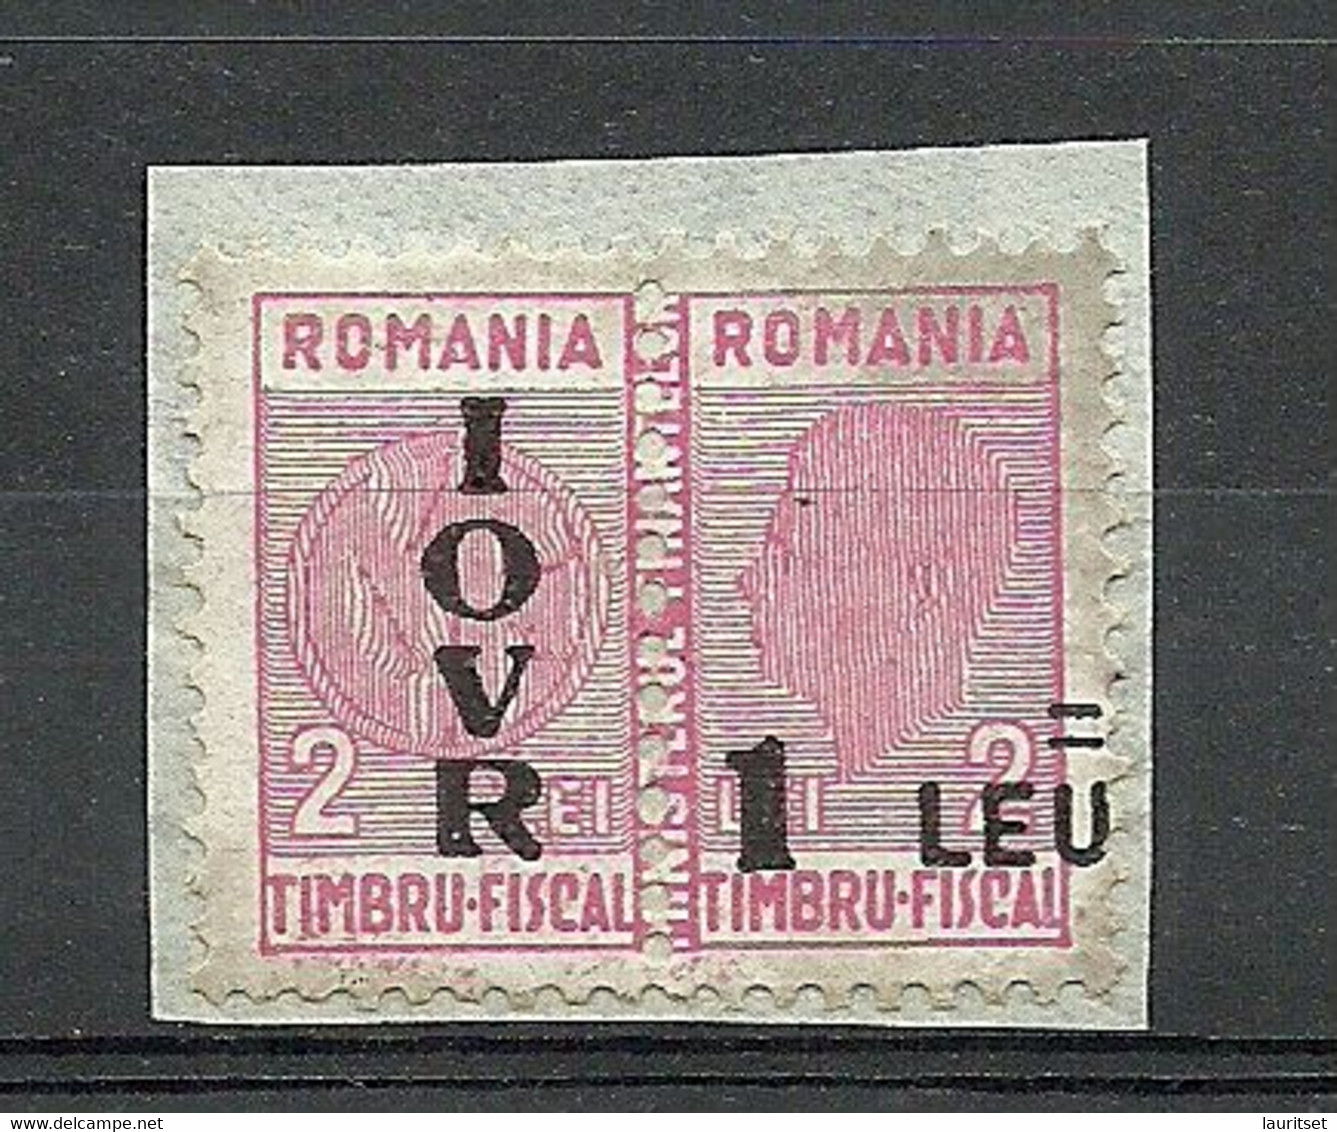 ROMANIA Rumänien 1947 Post-Steuermarke Tax Taxe Michel 36 (*) Unused On Paper - Fiscales